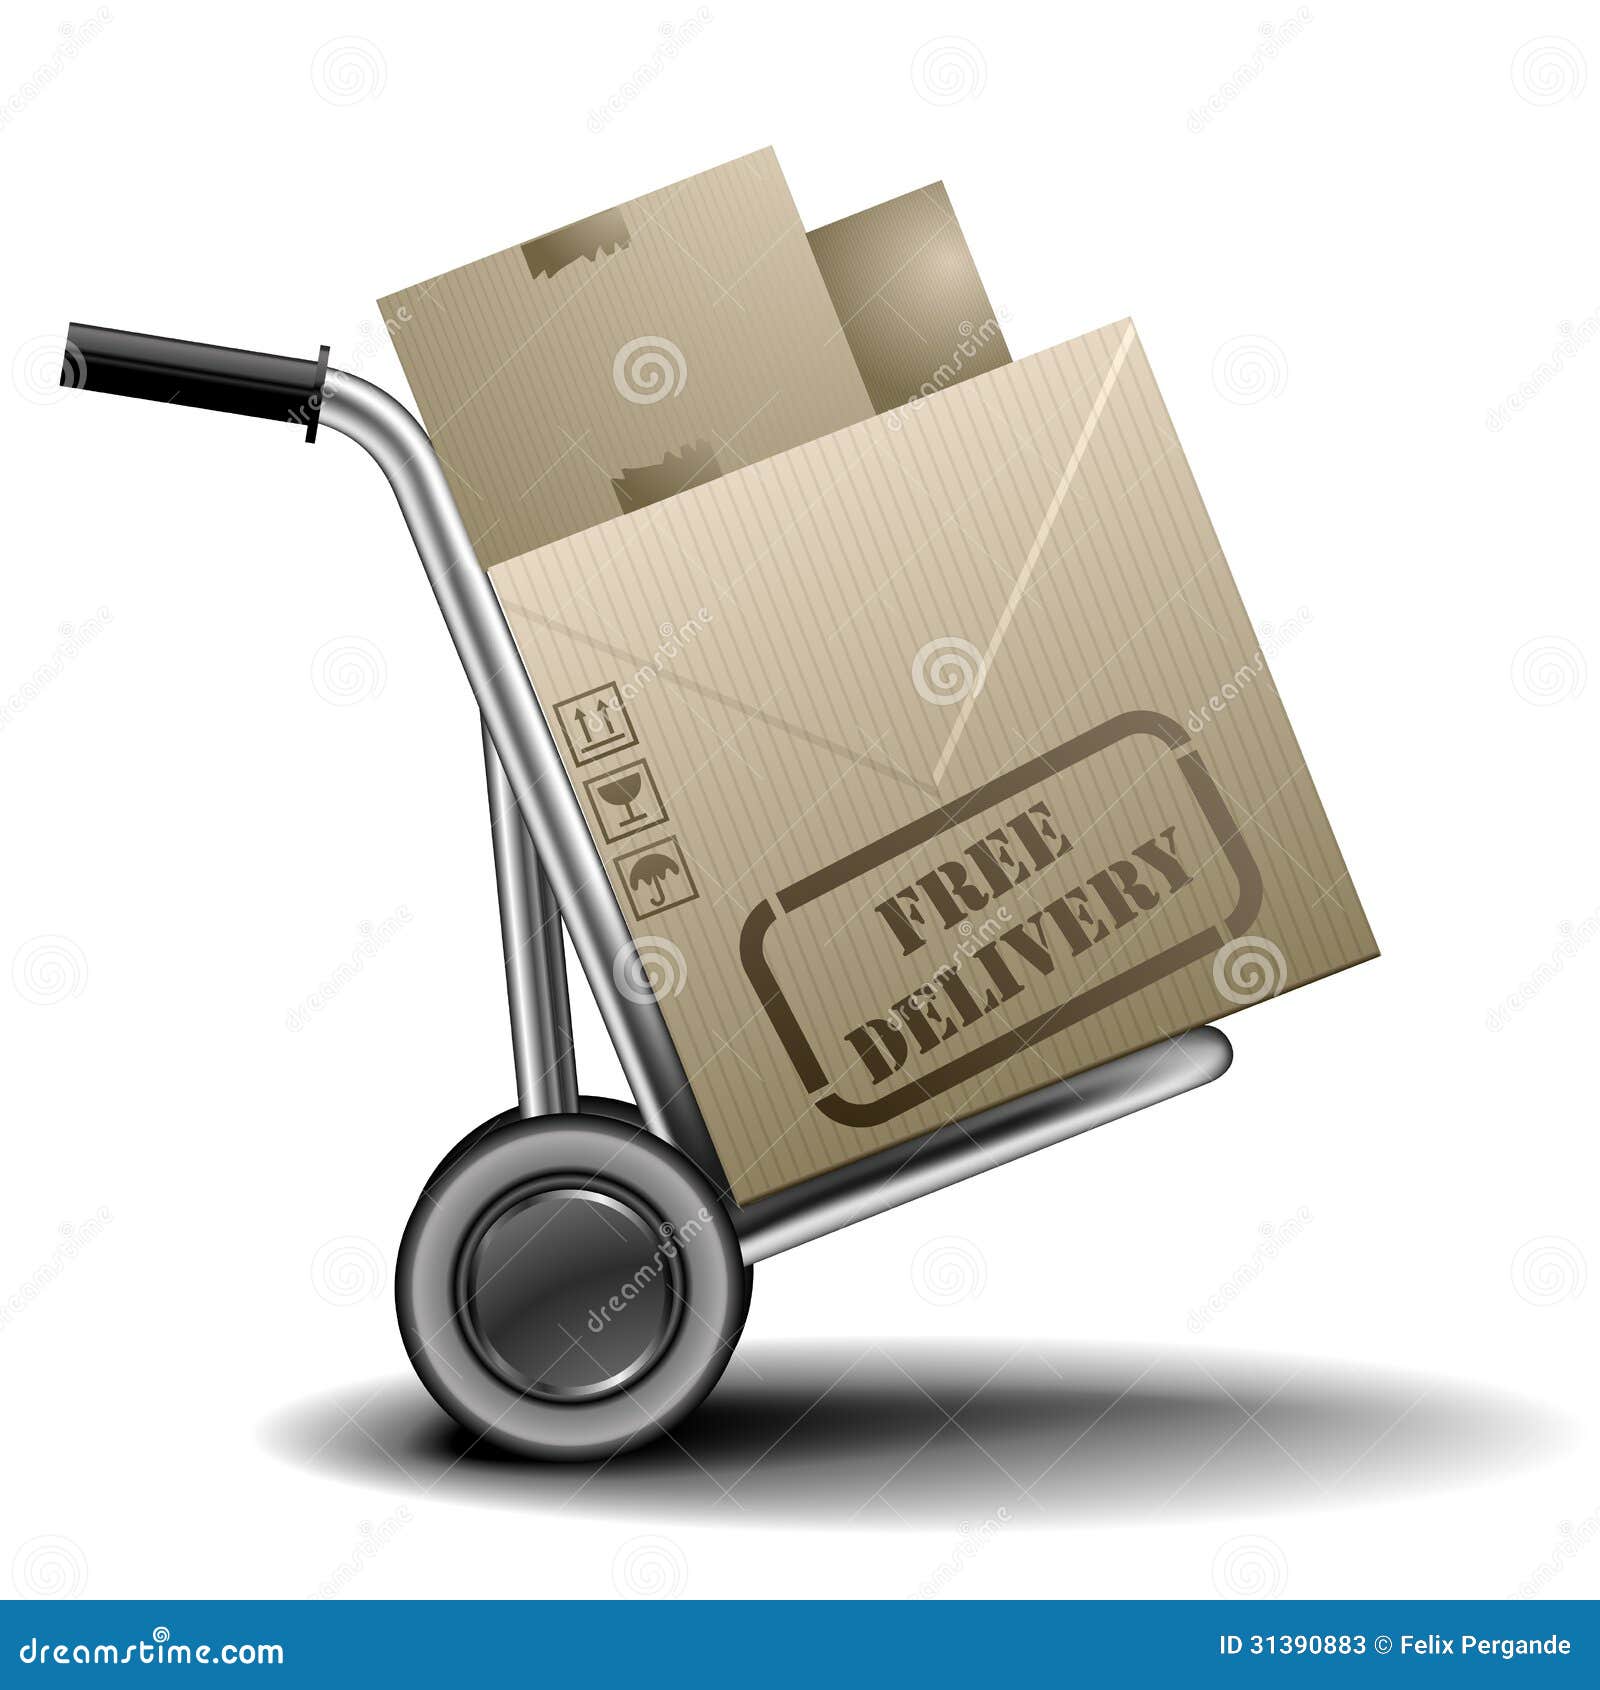 Vrije levering handtruck. Gedetailleerde illustratie van een handtruck of een karretje met cardboxes met vrij leveringsetiket op hen